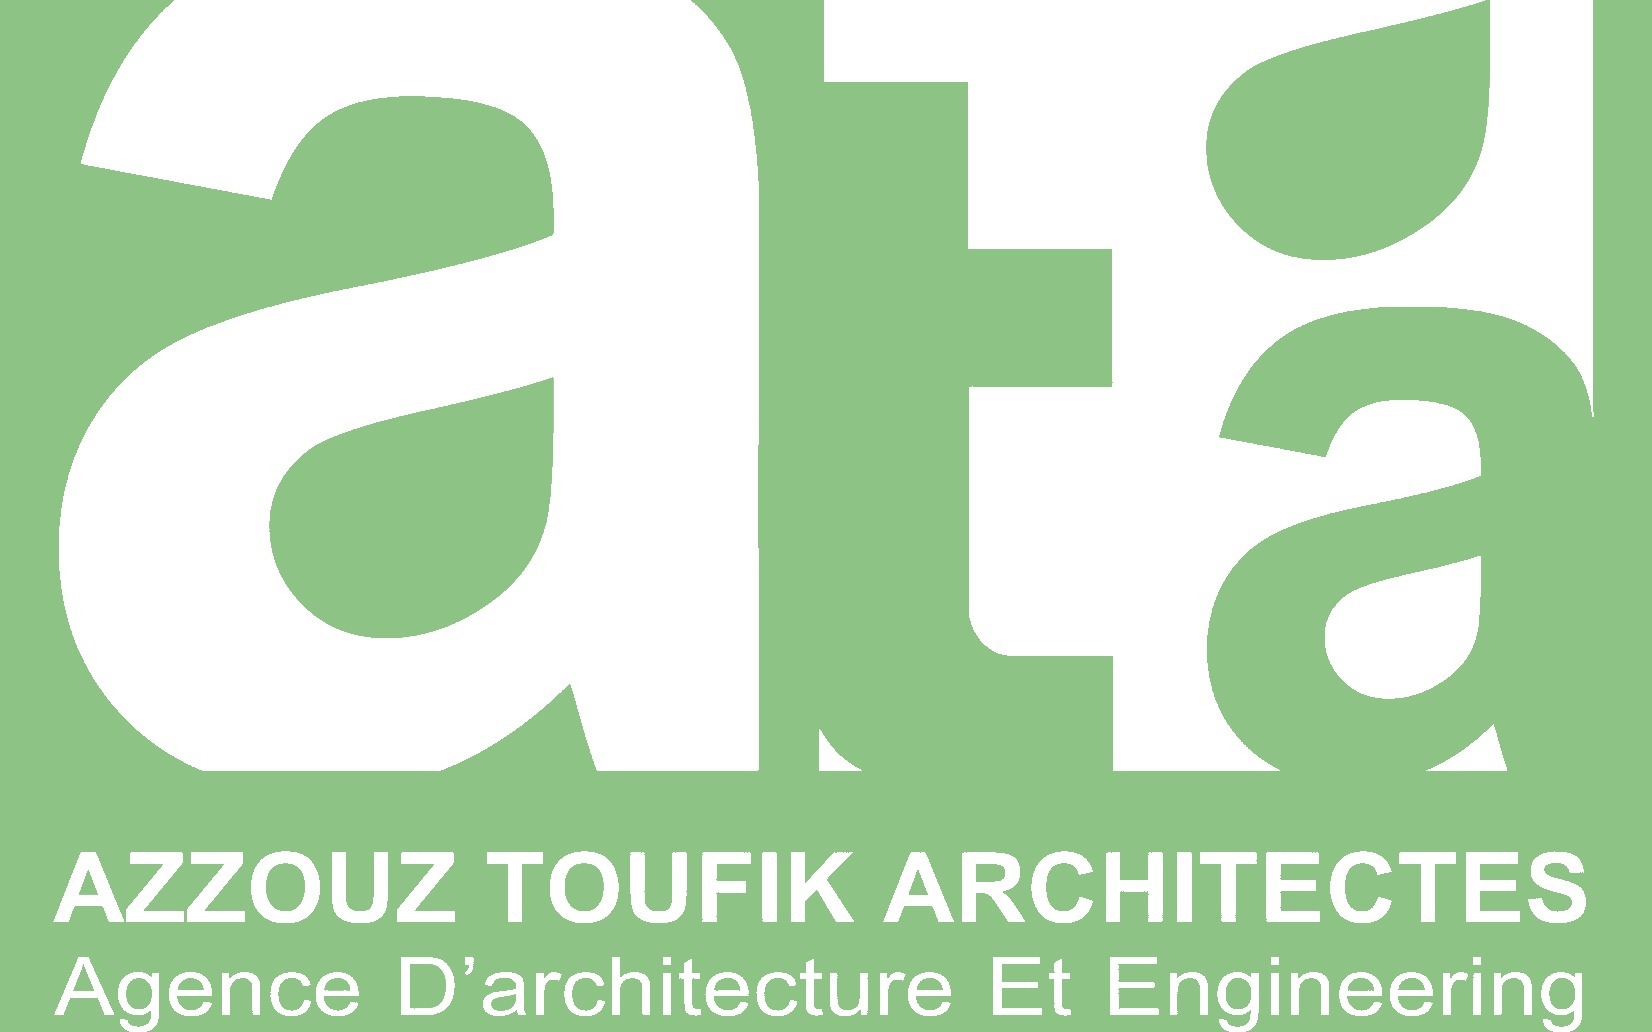 Azzouz Toufik Architectes